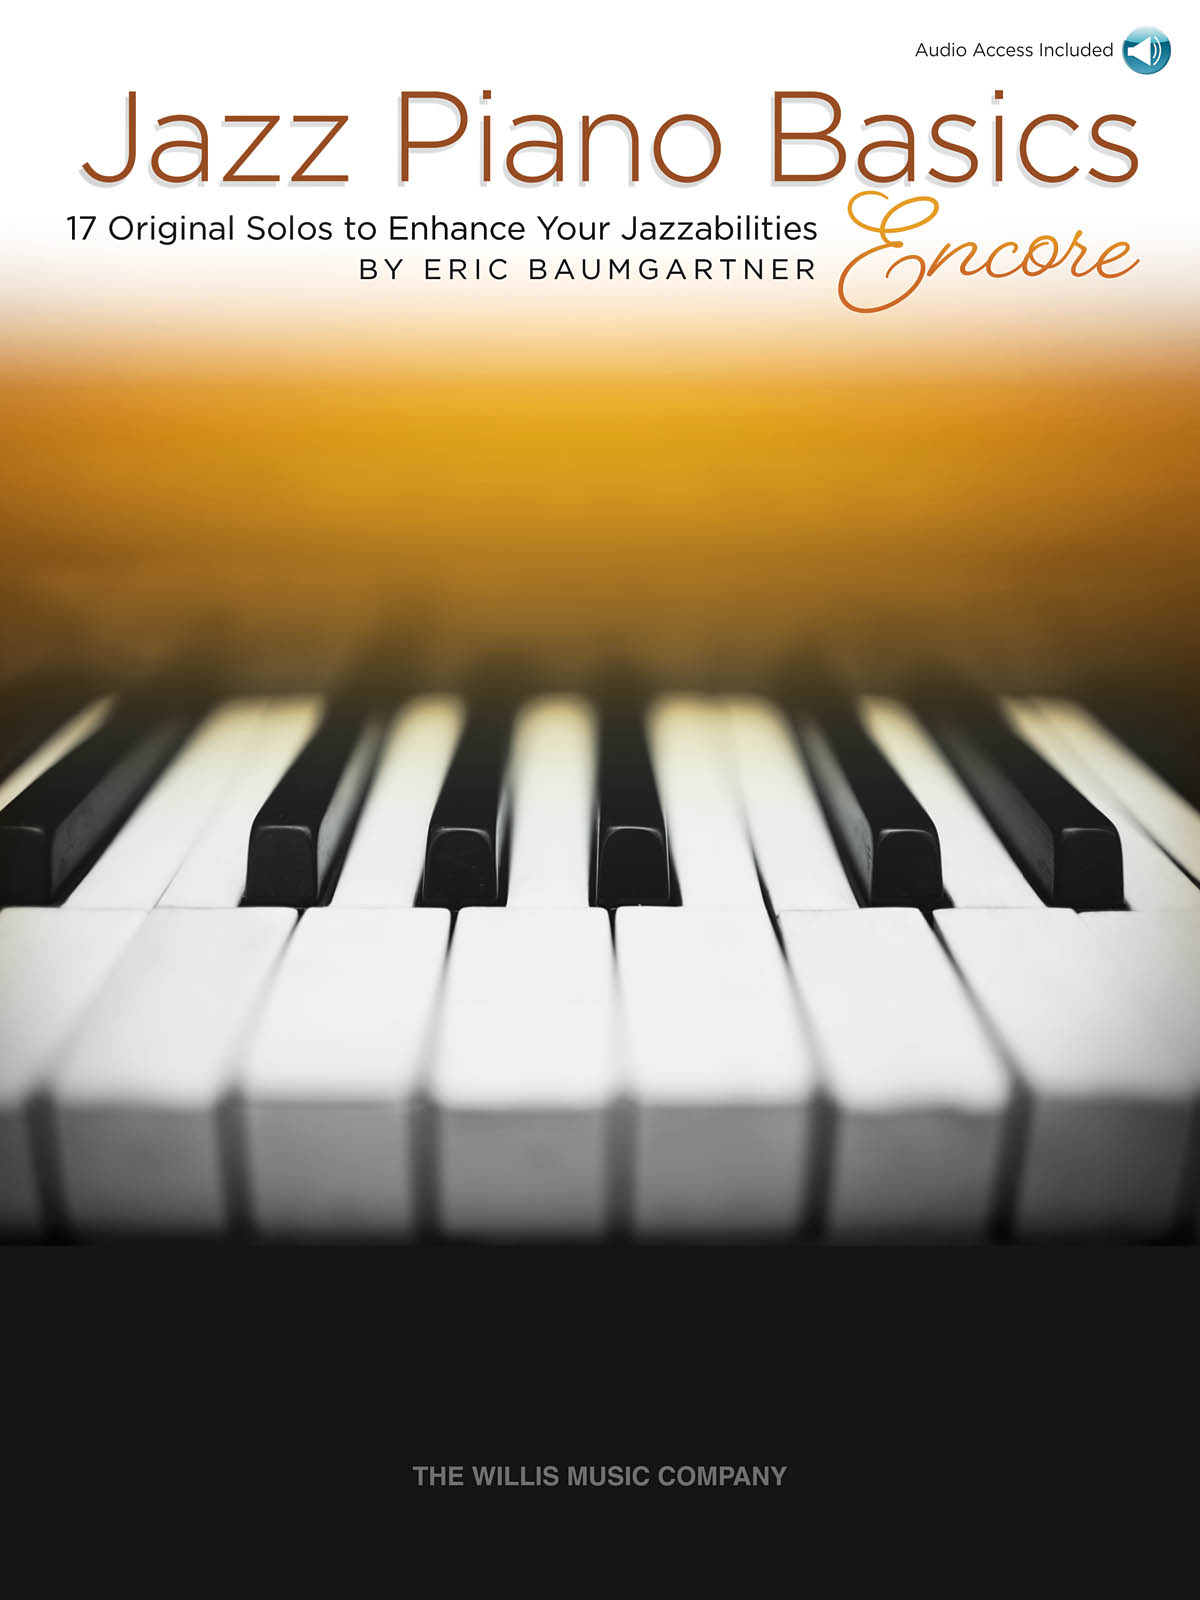 Jazz Piano Basics - Encore (BAUMGARTNER ERIC)